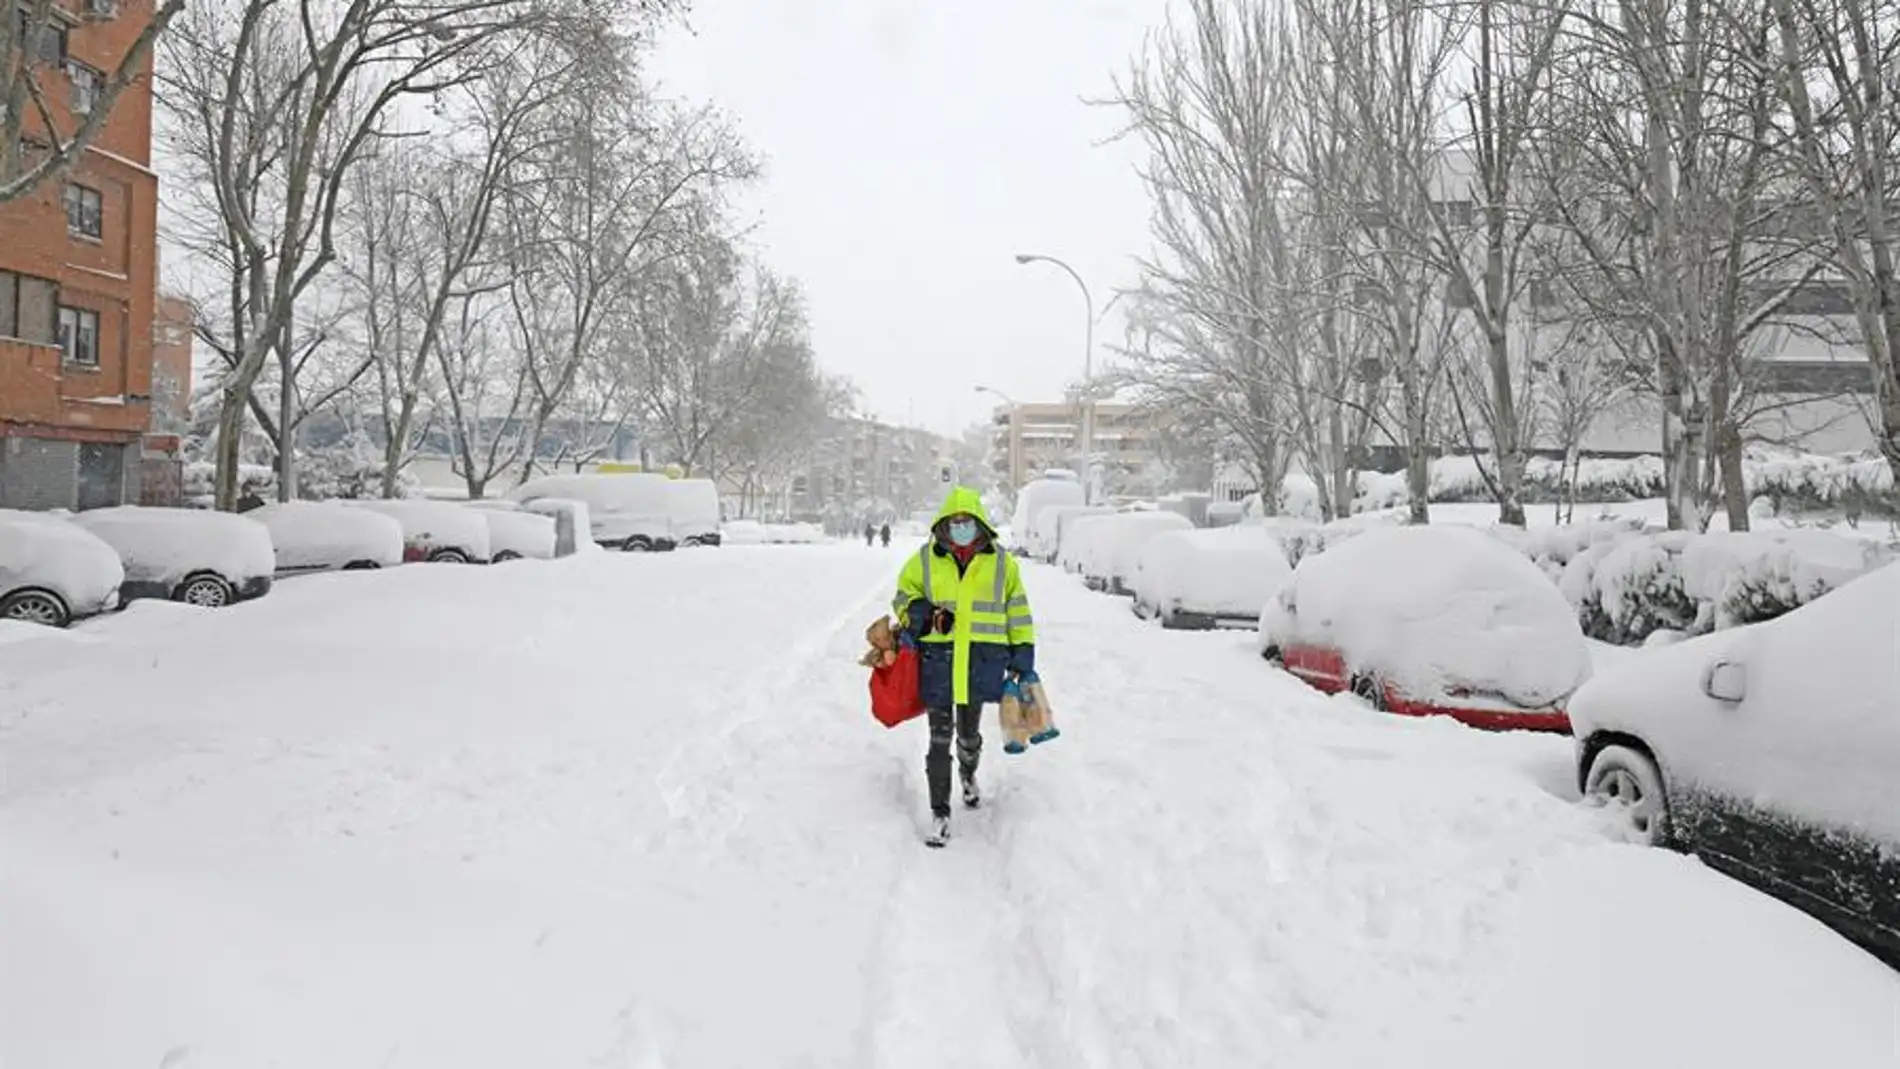 Nieve y frío intenso en Madrid: los expertos actualizan la previsión en  pleno temporal invernal